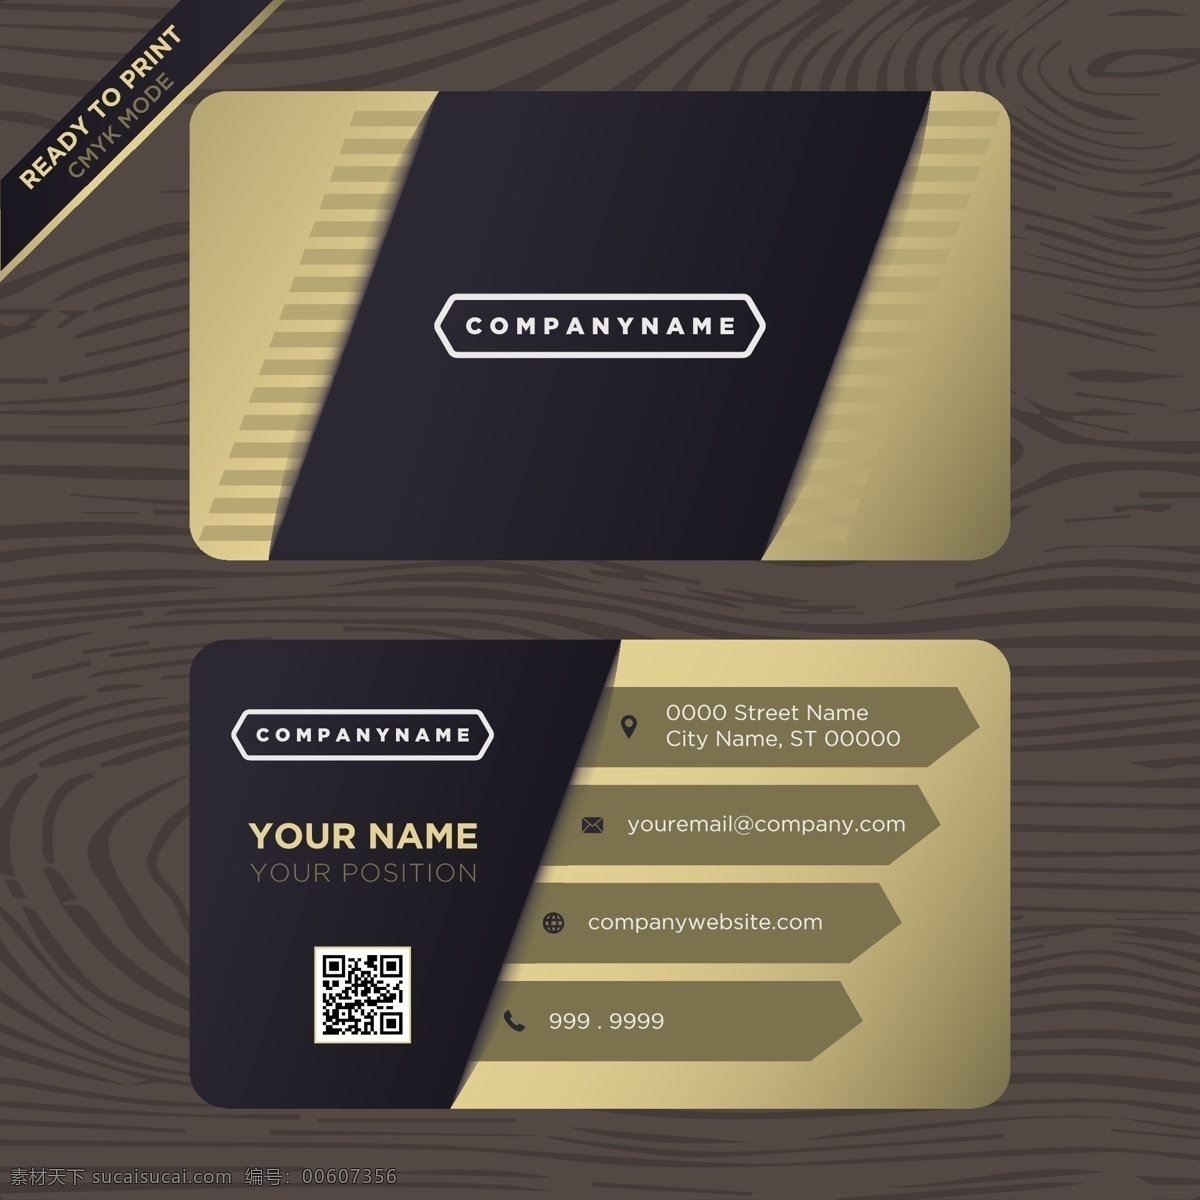 黑白名片设计 商标 名片 商务 黄金 抽象 卡片 模板 办公室 黑色 展示 文具 公司 抽象标志 企业标识 品牌 现代